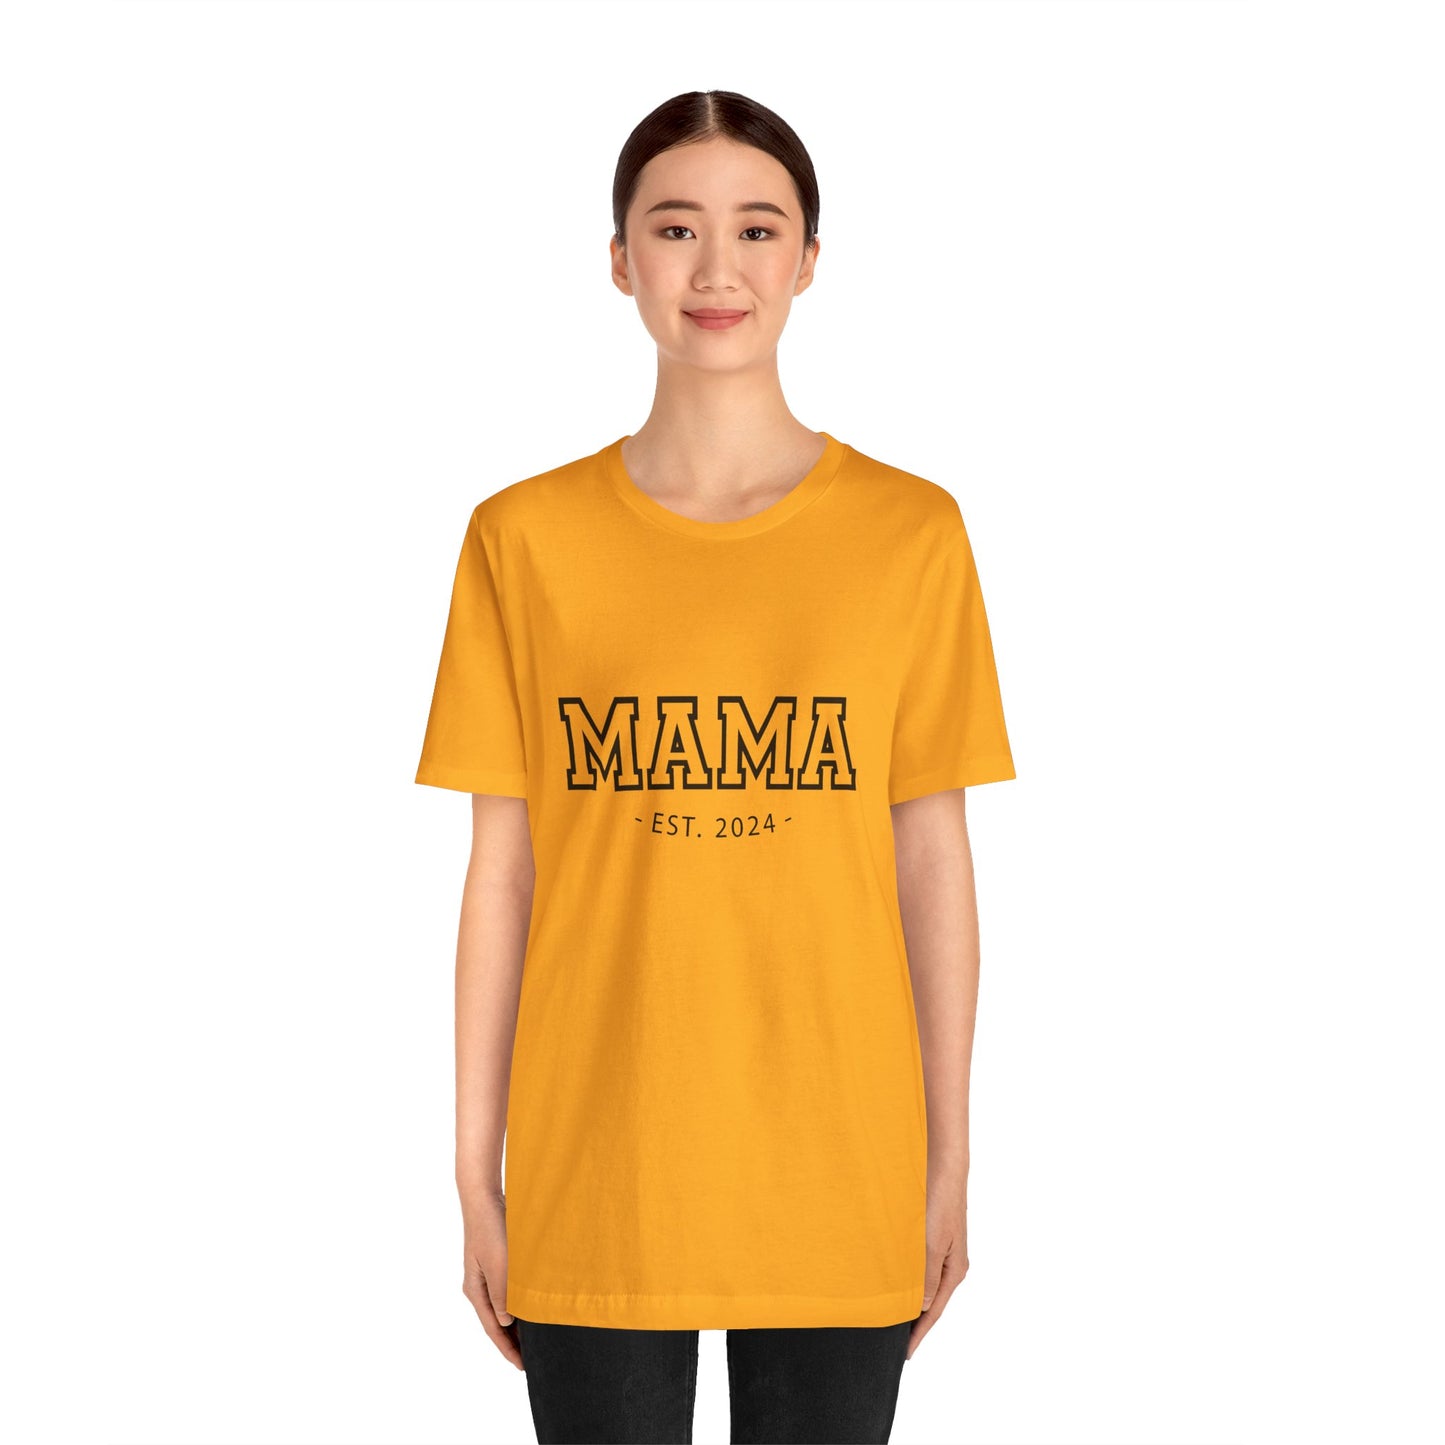 Mama T-Tshirt, Mother's Day Shirt, New mom tshirt